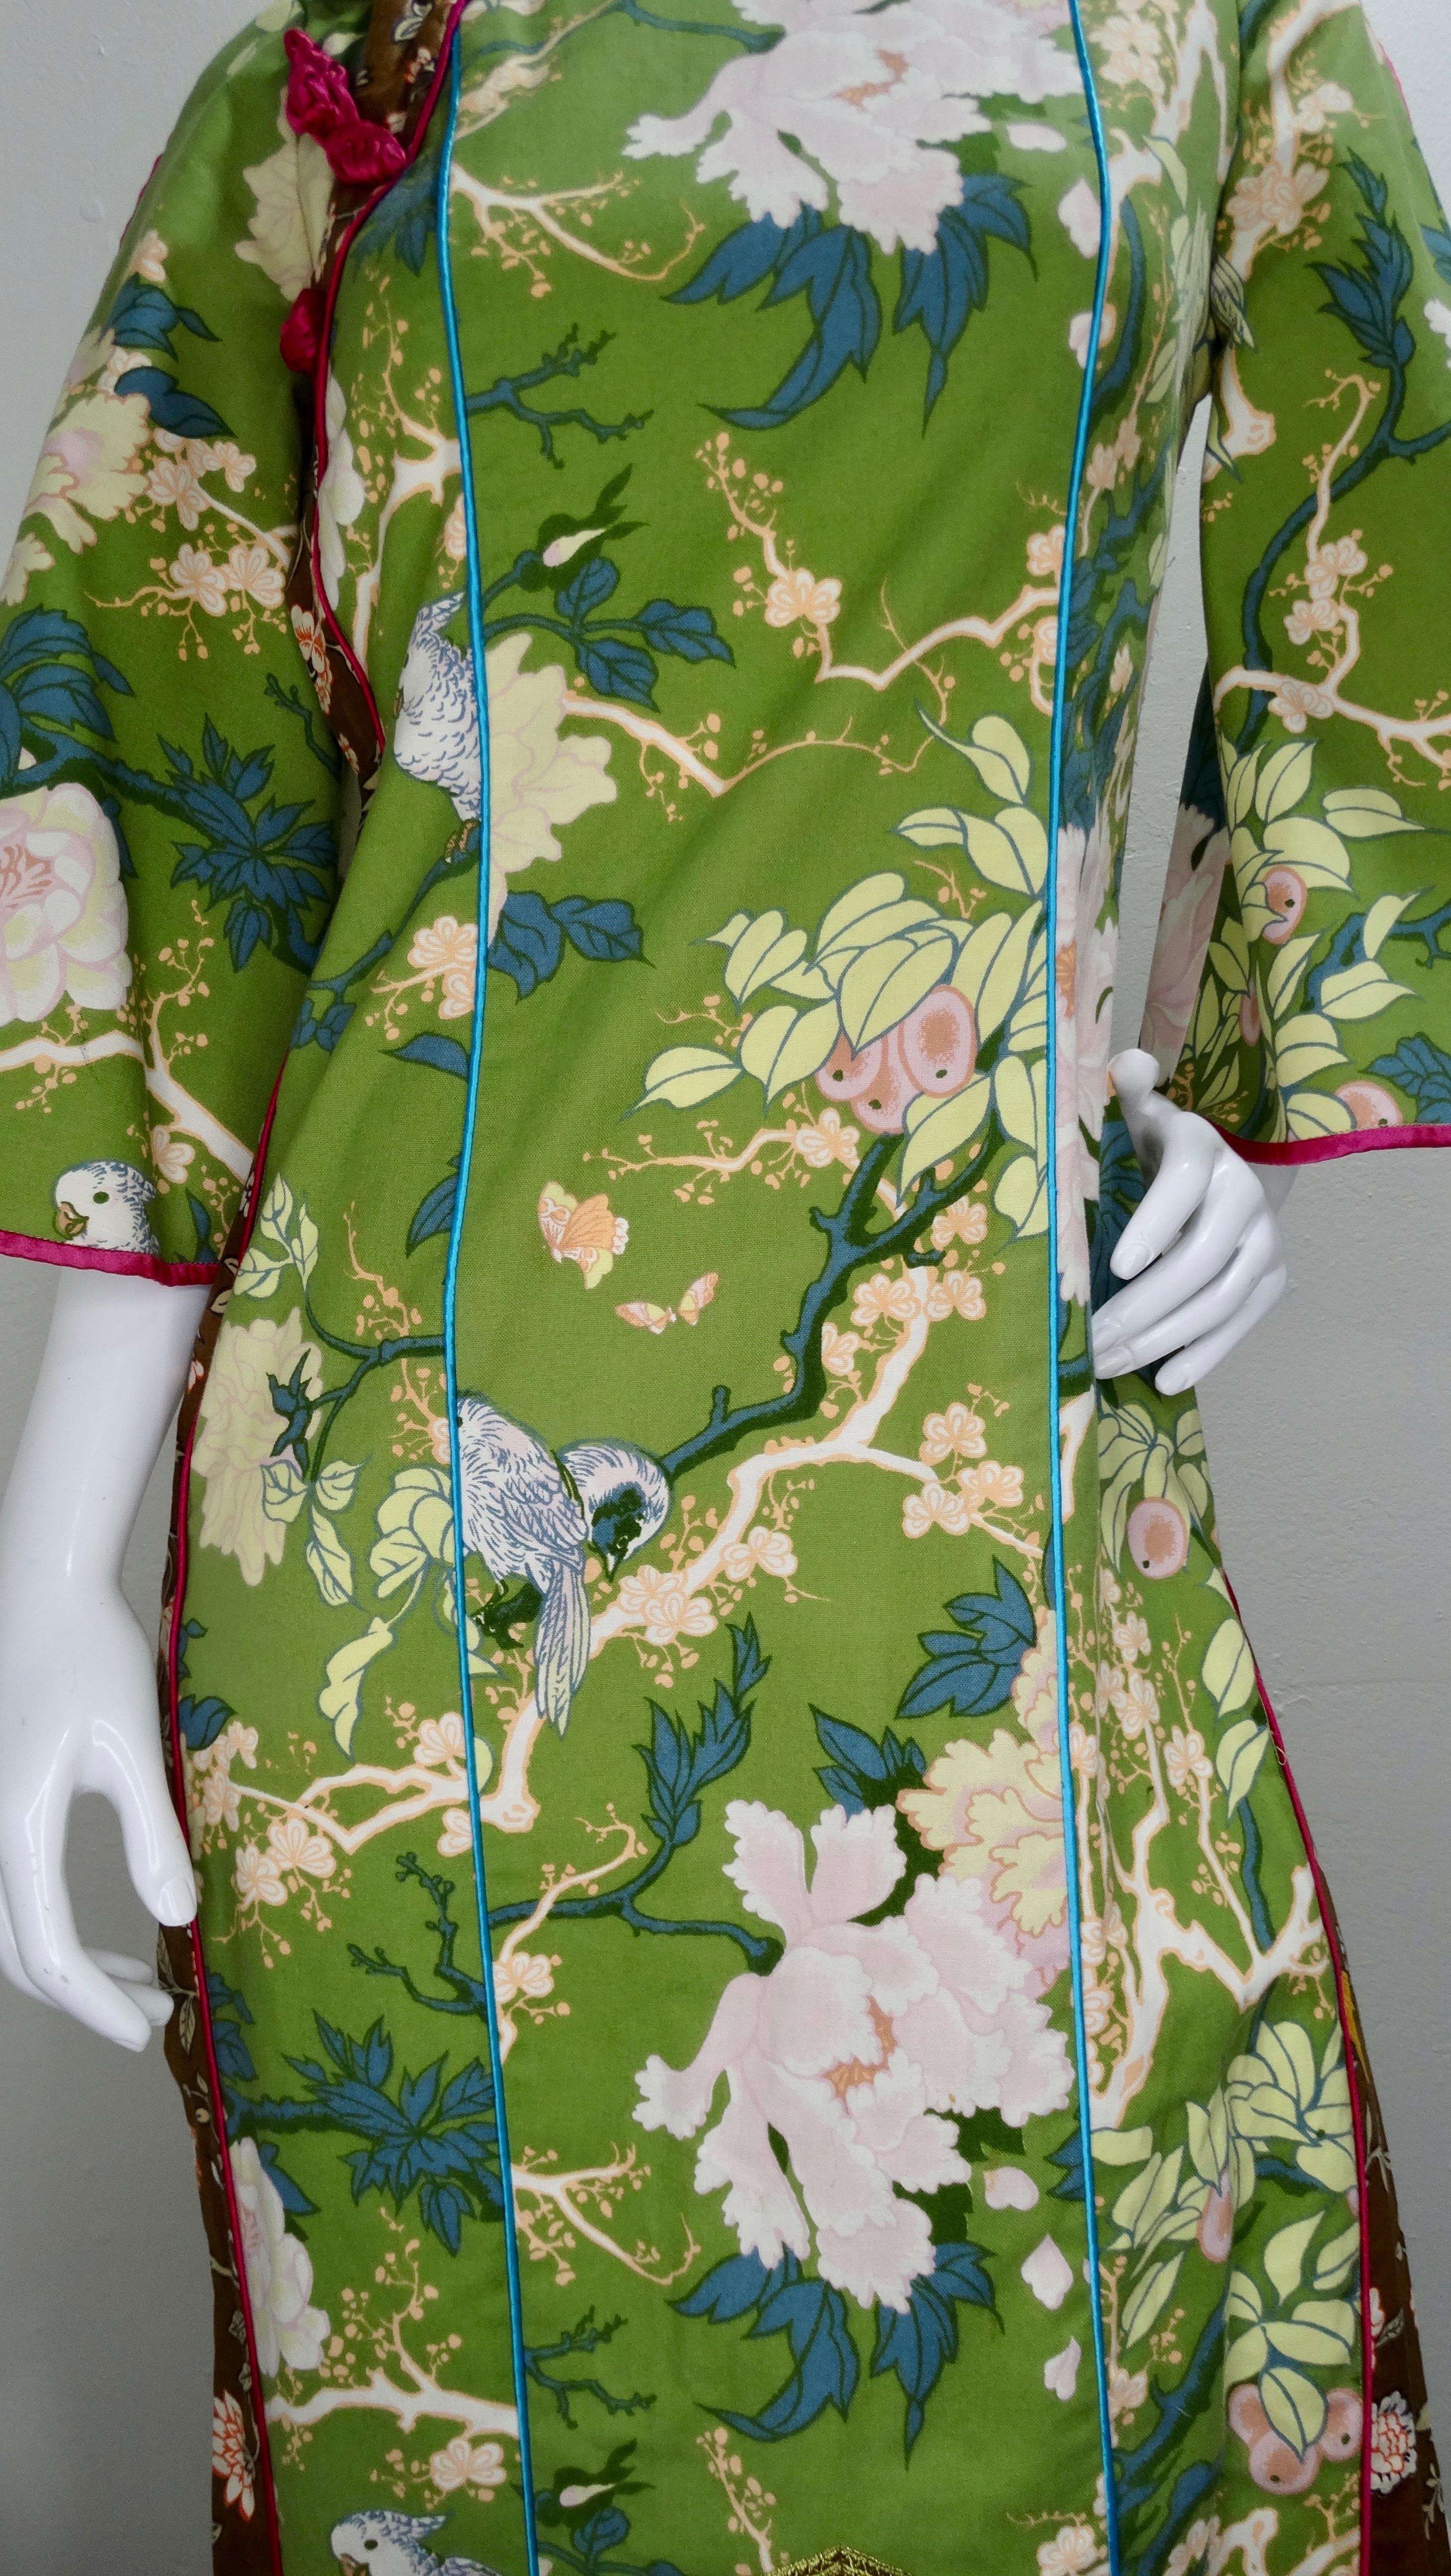 Giorgio di Sant' Angelo 1970s Kimono Dress 8